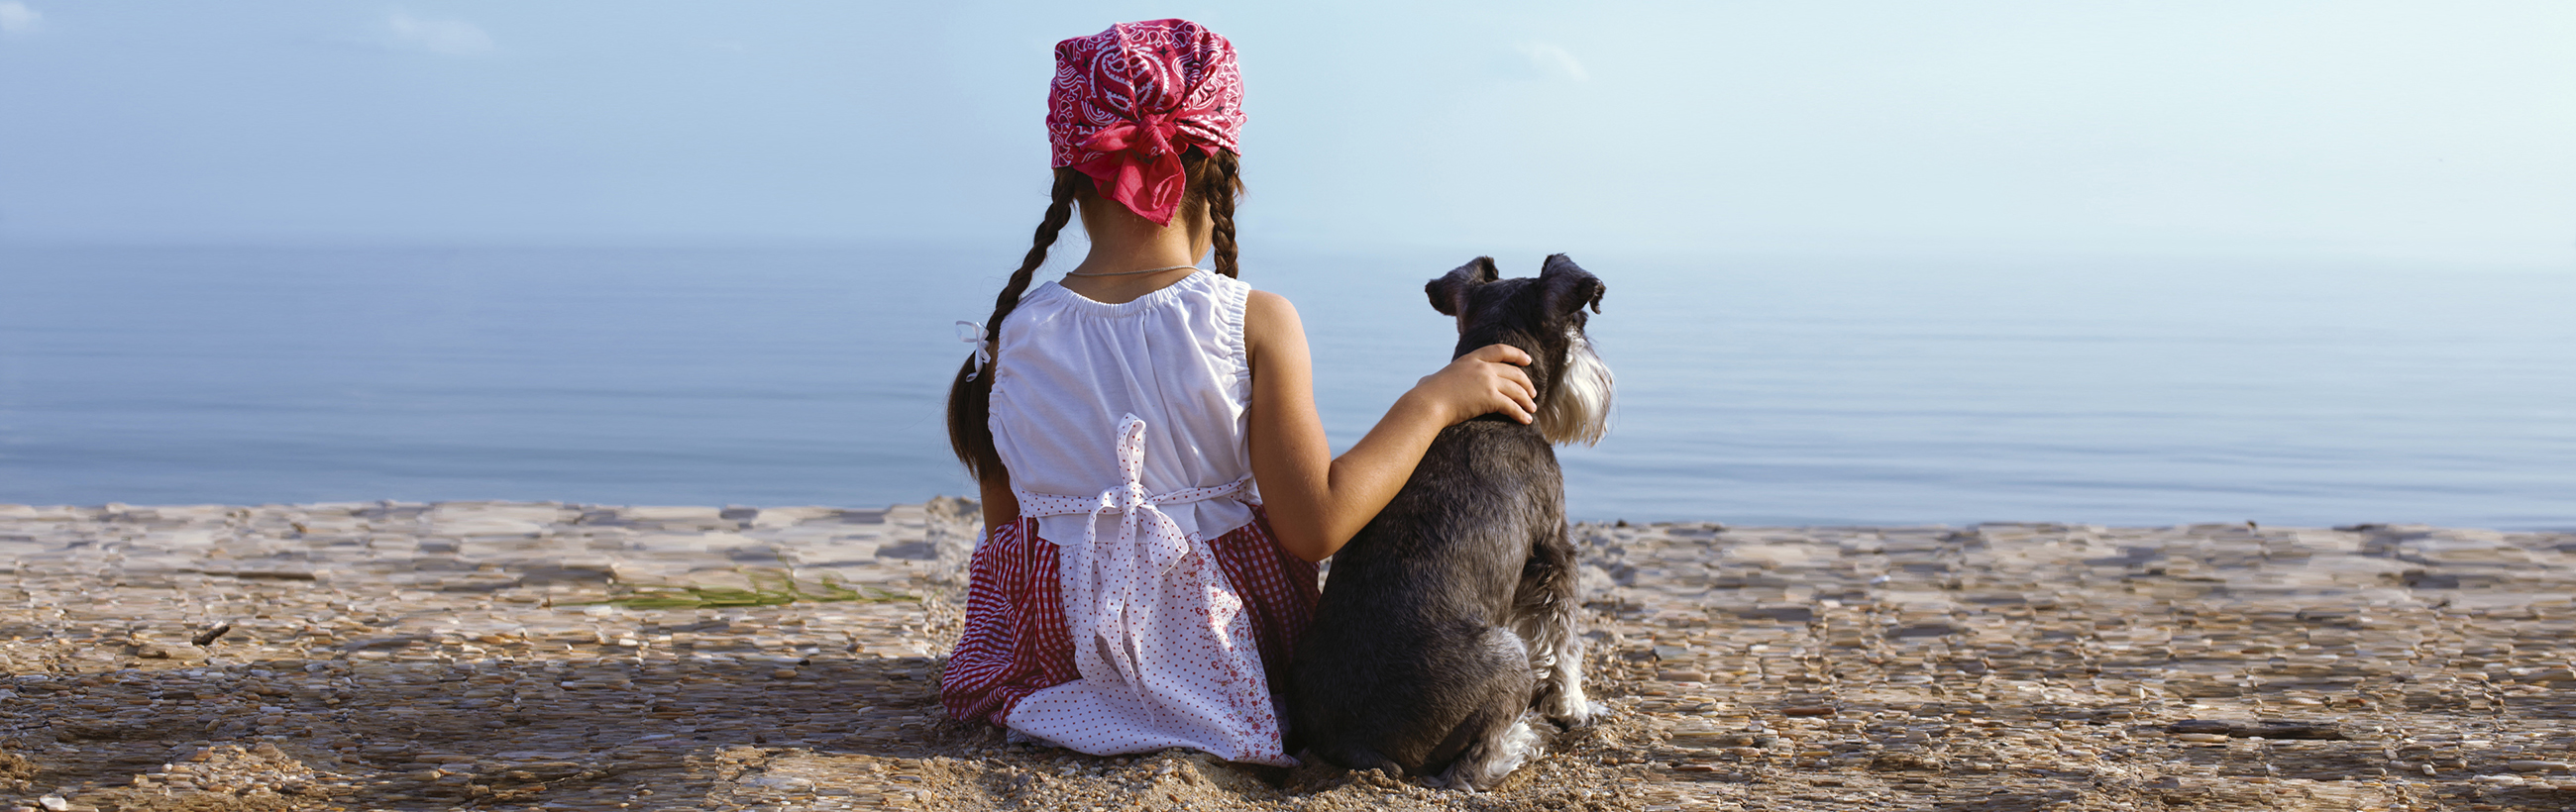 Girl on beach with dog